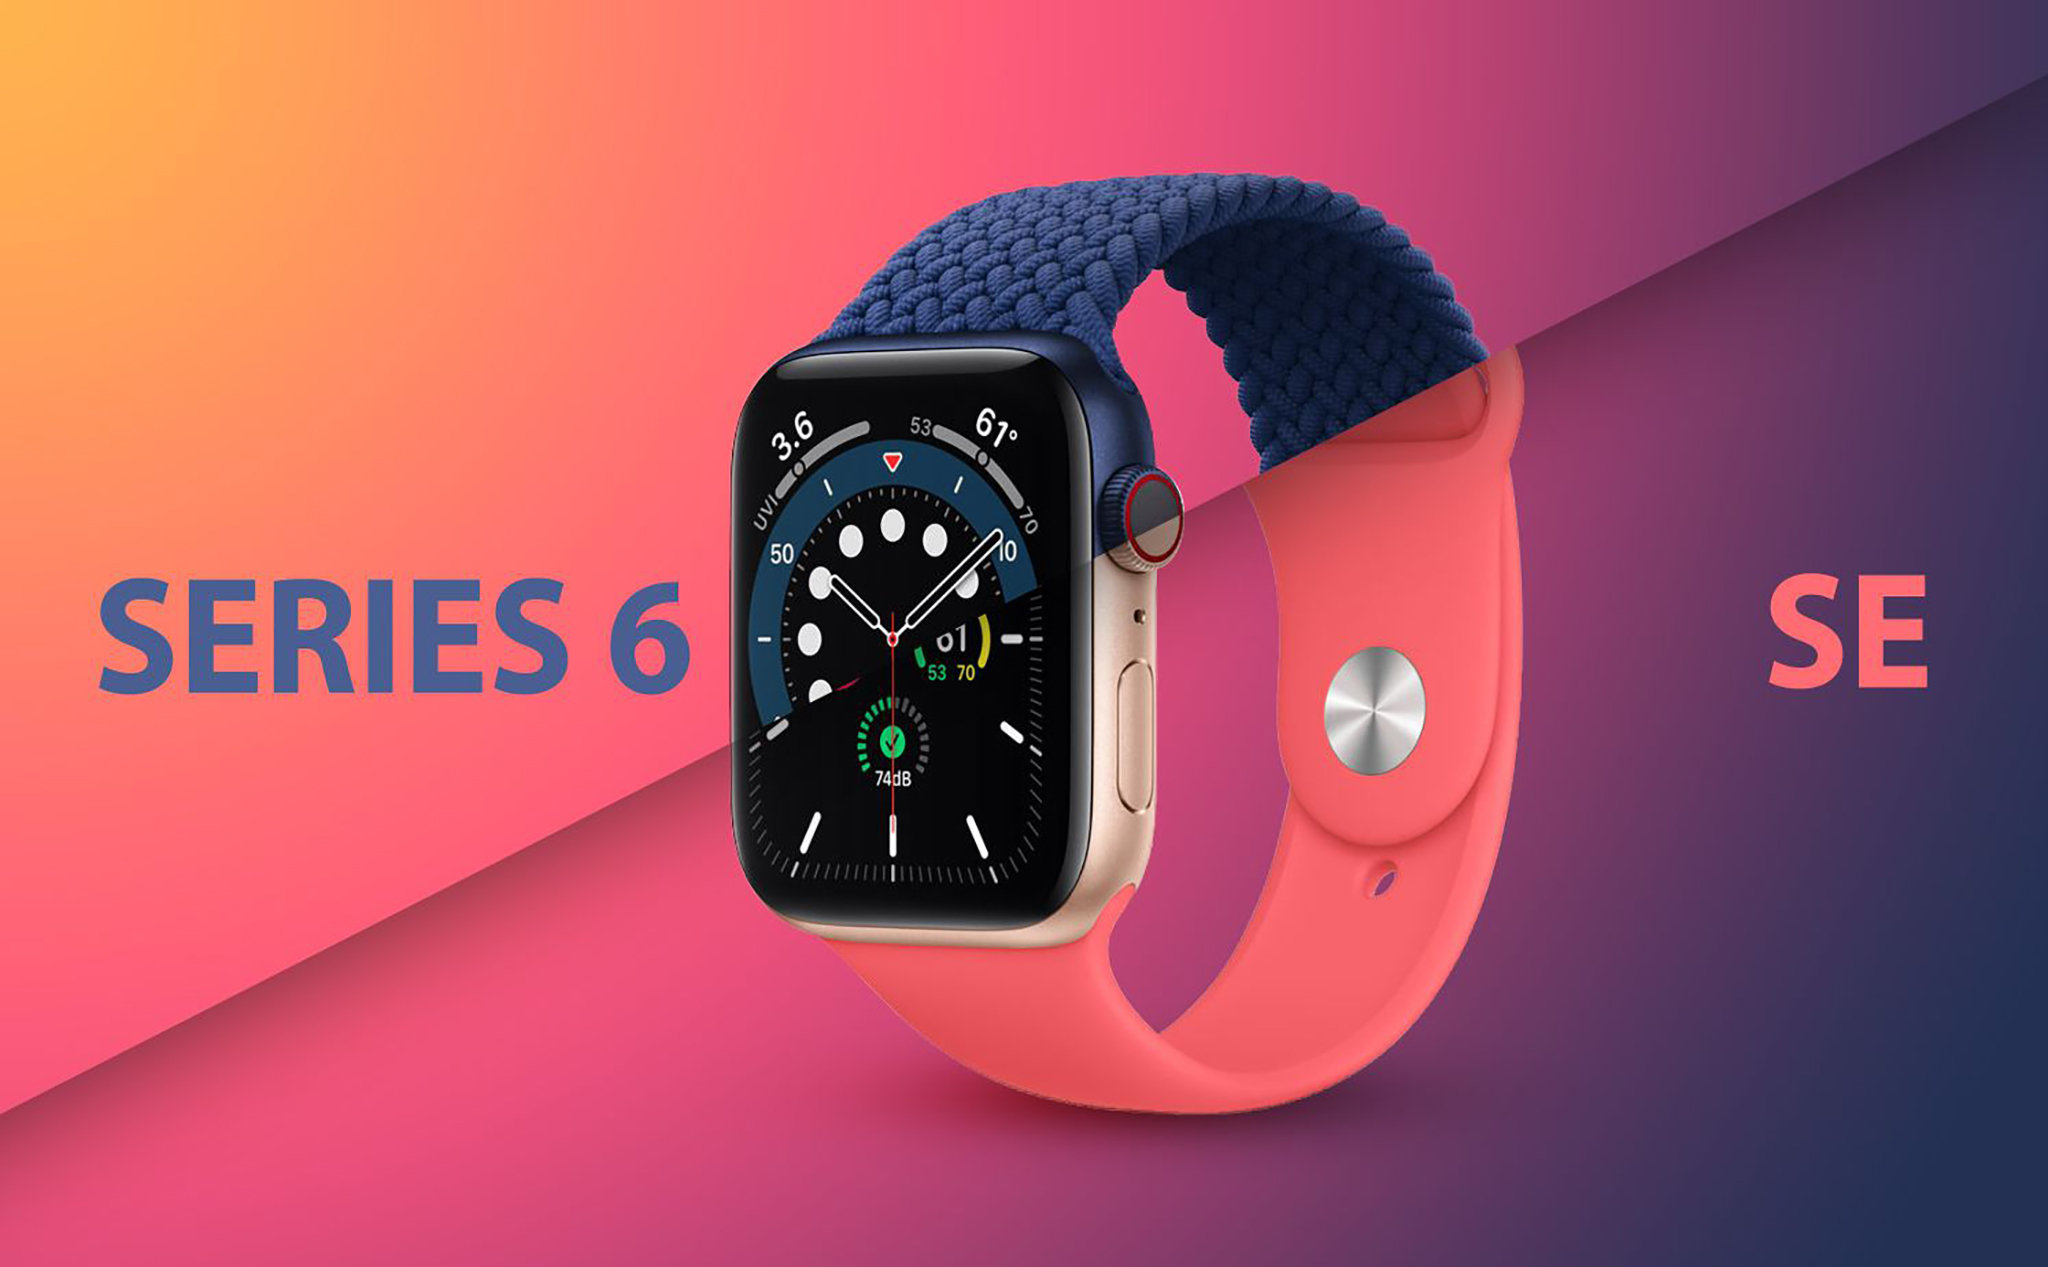 [QC] Bảng giá Trade-in Apple Watch 6, SE tại Di Động Việt, đổi cũ lấy mới tiết kiệm đến 6,4 triệu